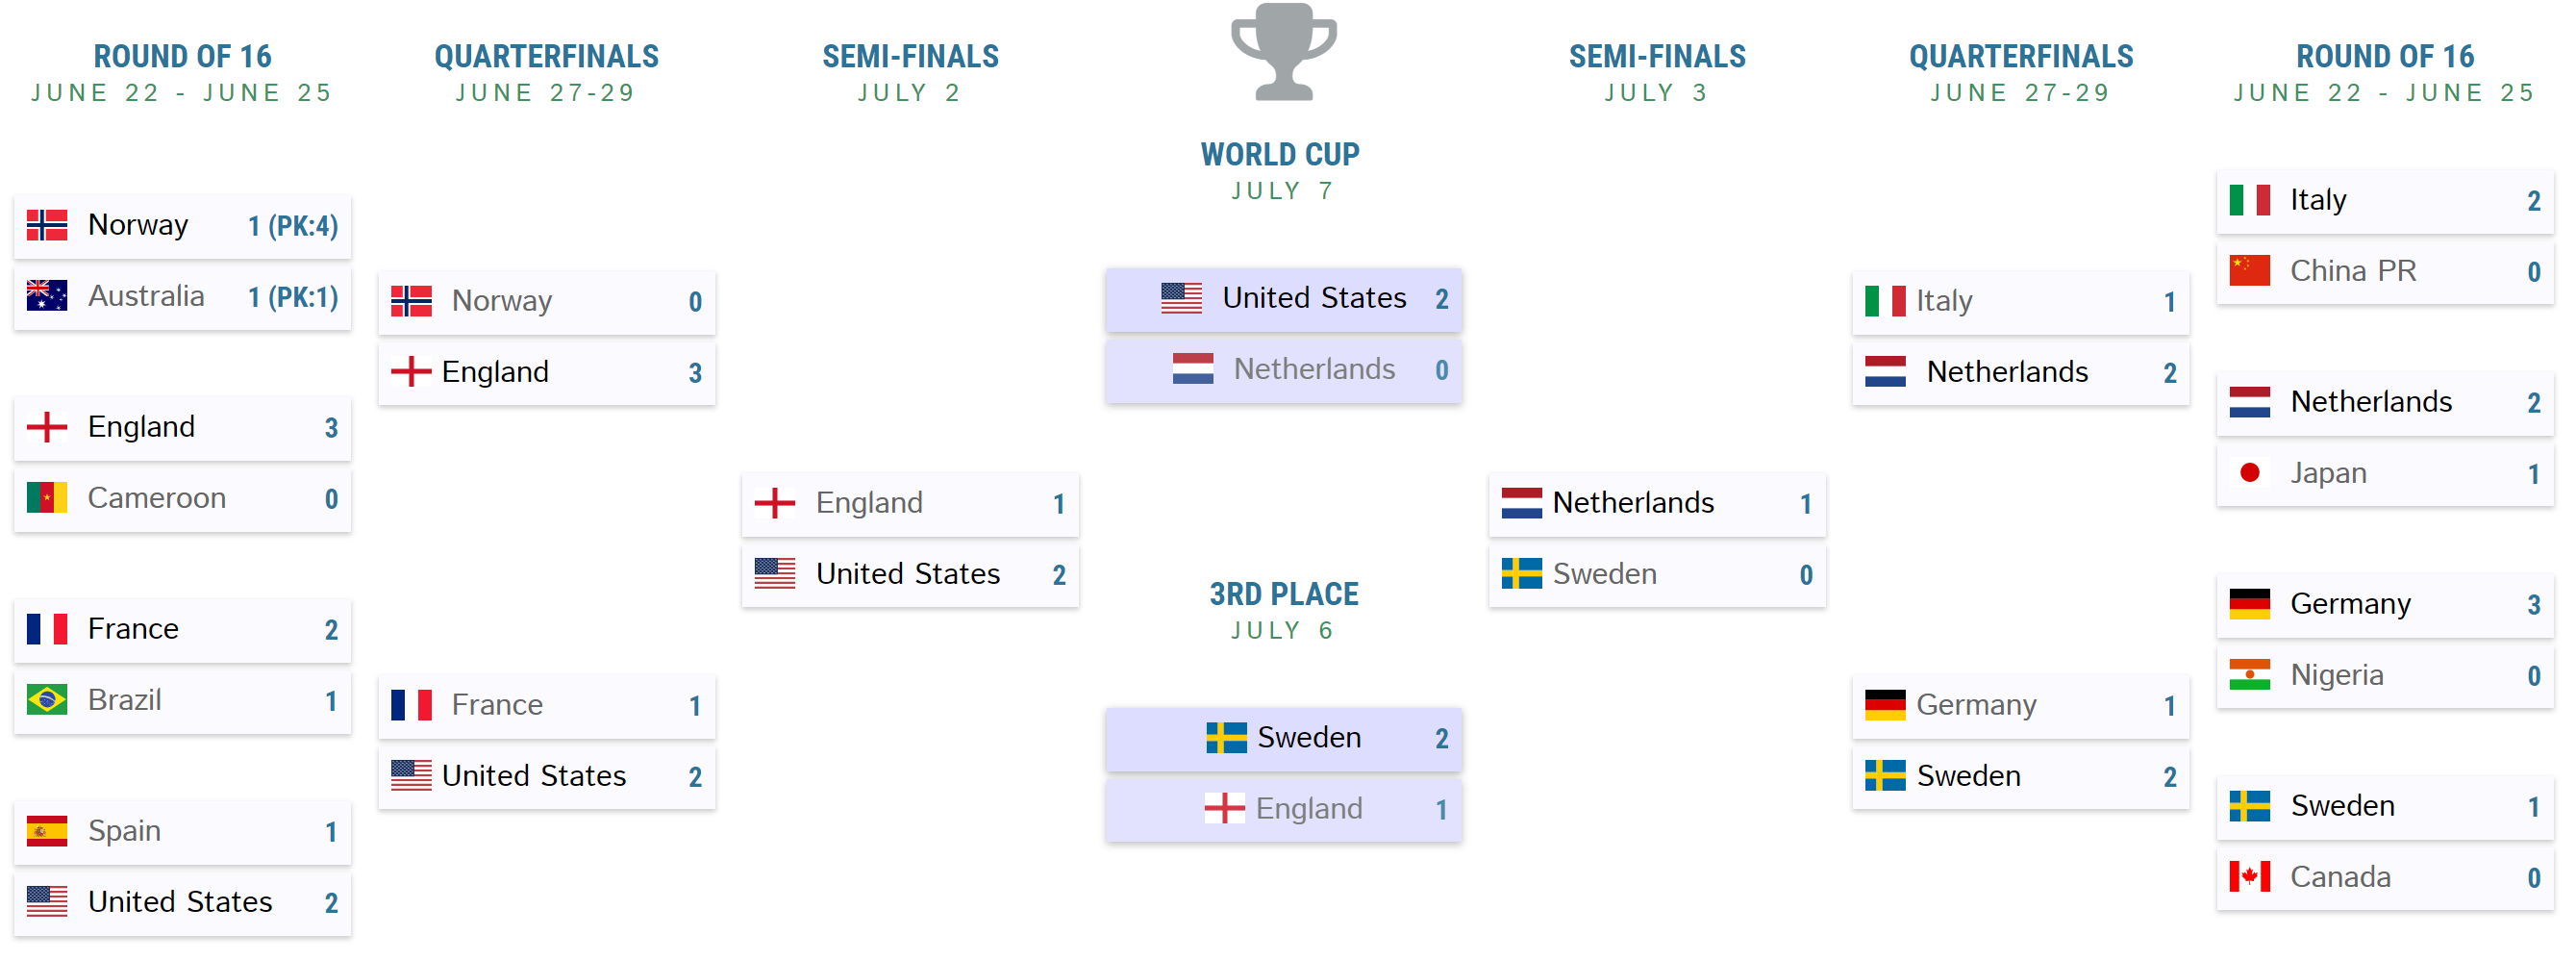 womens-world-cup-final-bracket.png 